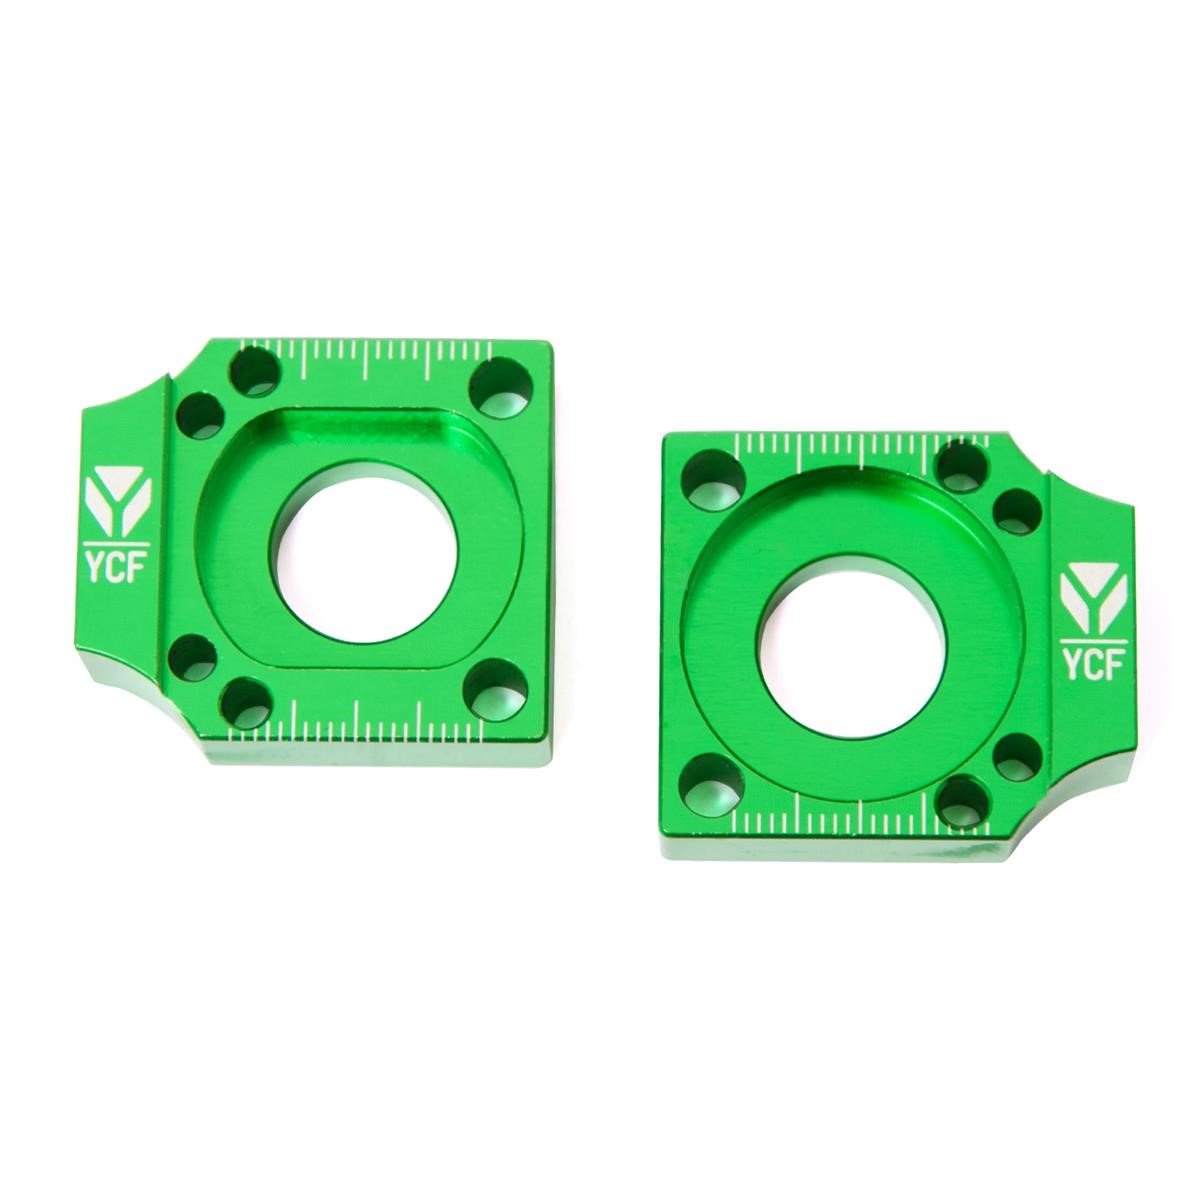 YCF Achsblöcke  für Aluminiumschwingen, Grün